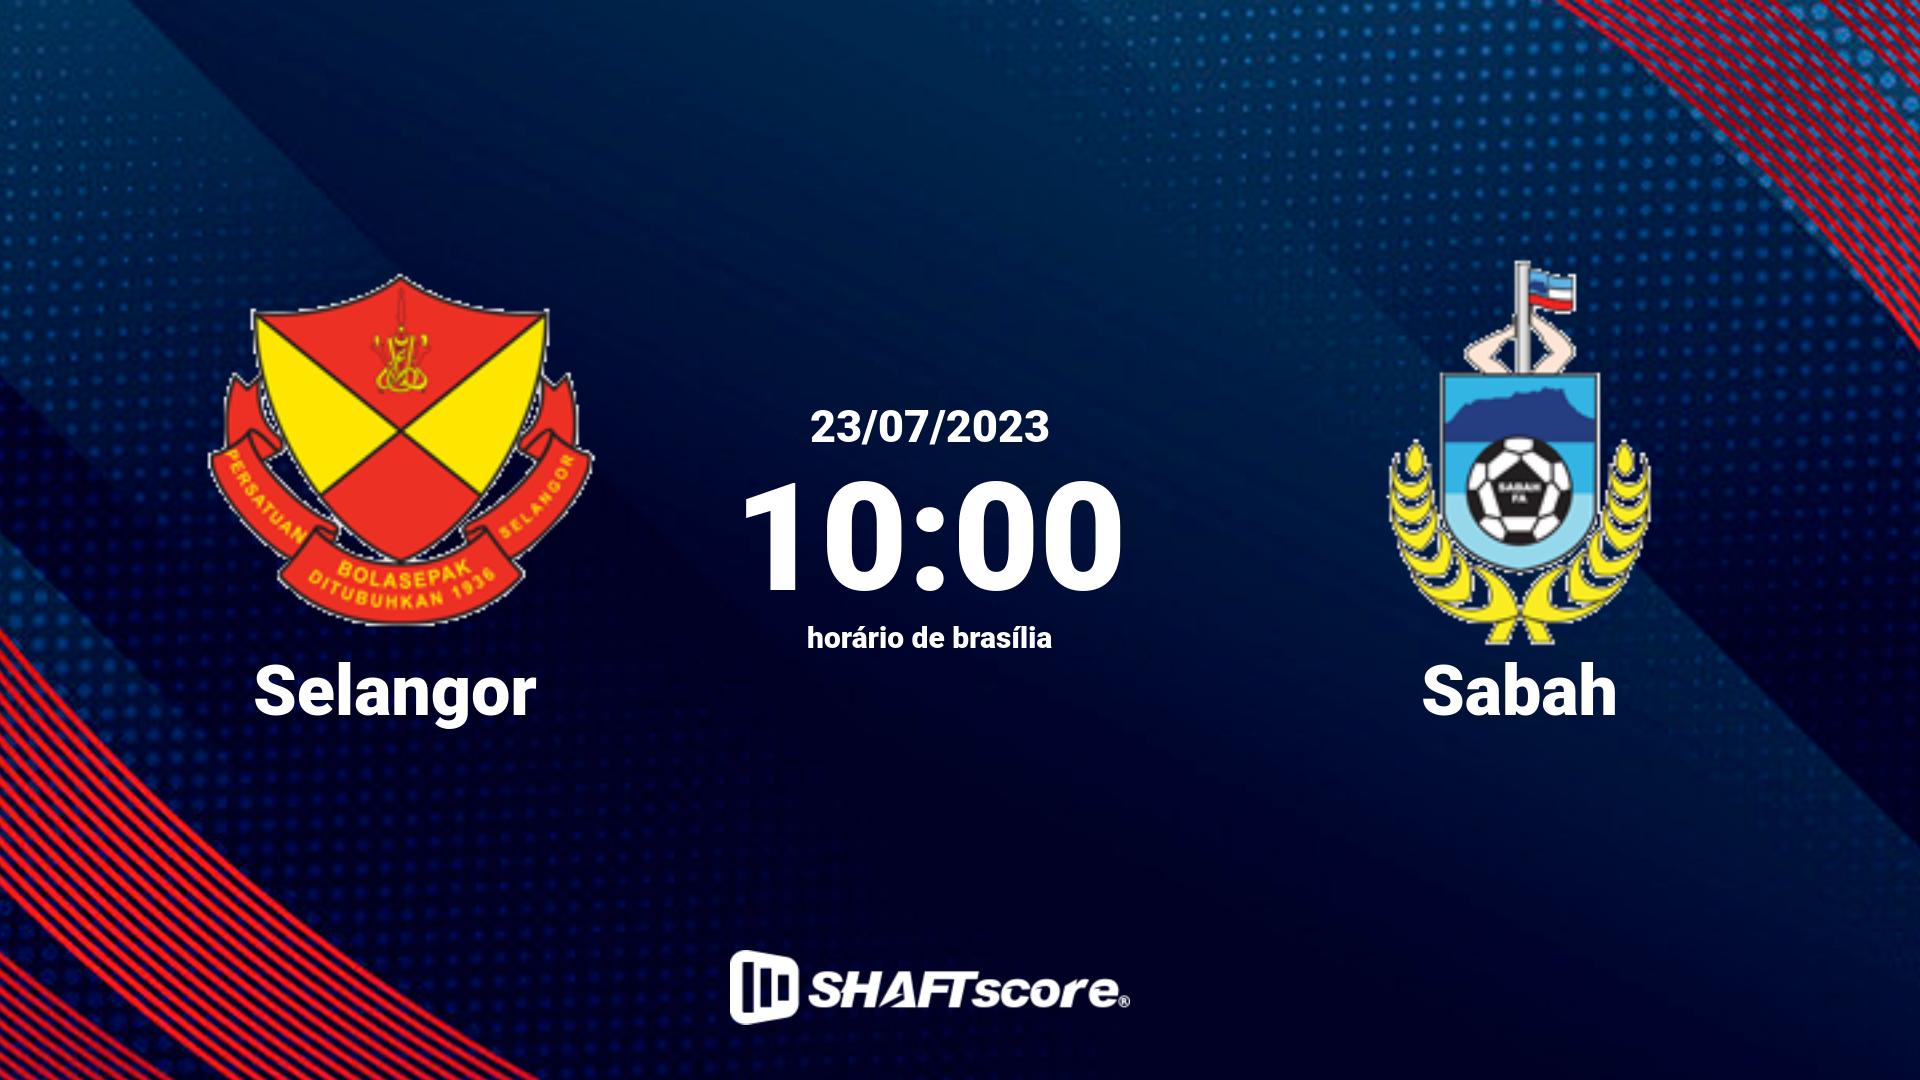 Estatísticas do jogo Selangor vs Sabah 23.07 10:00